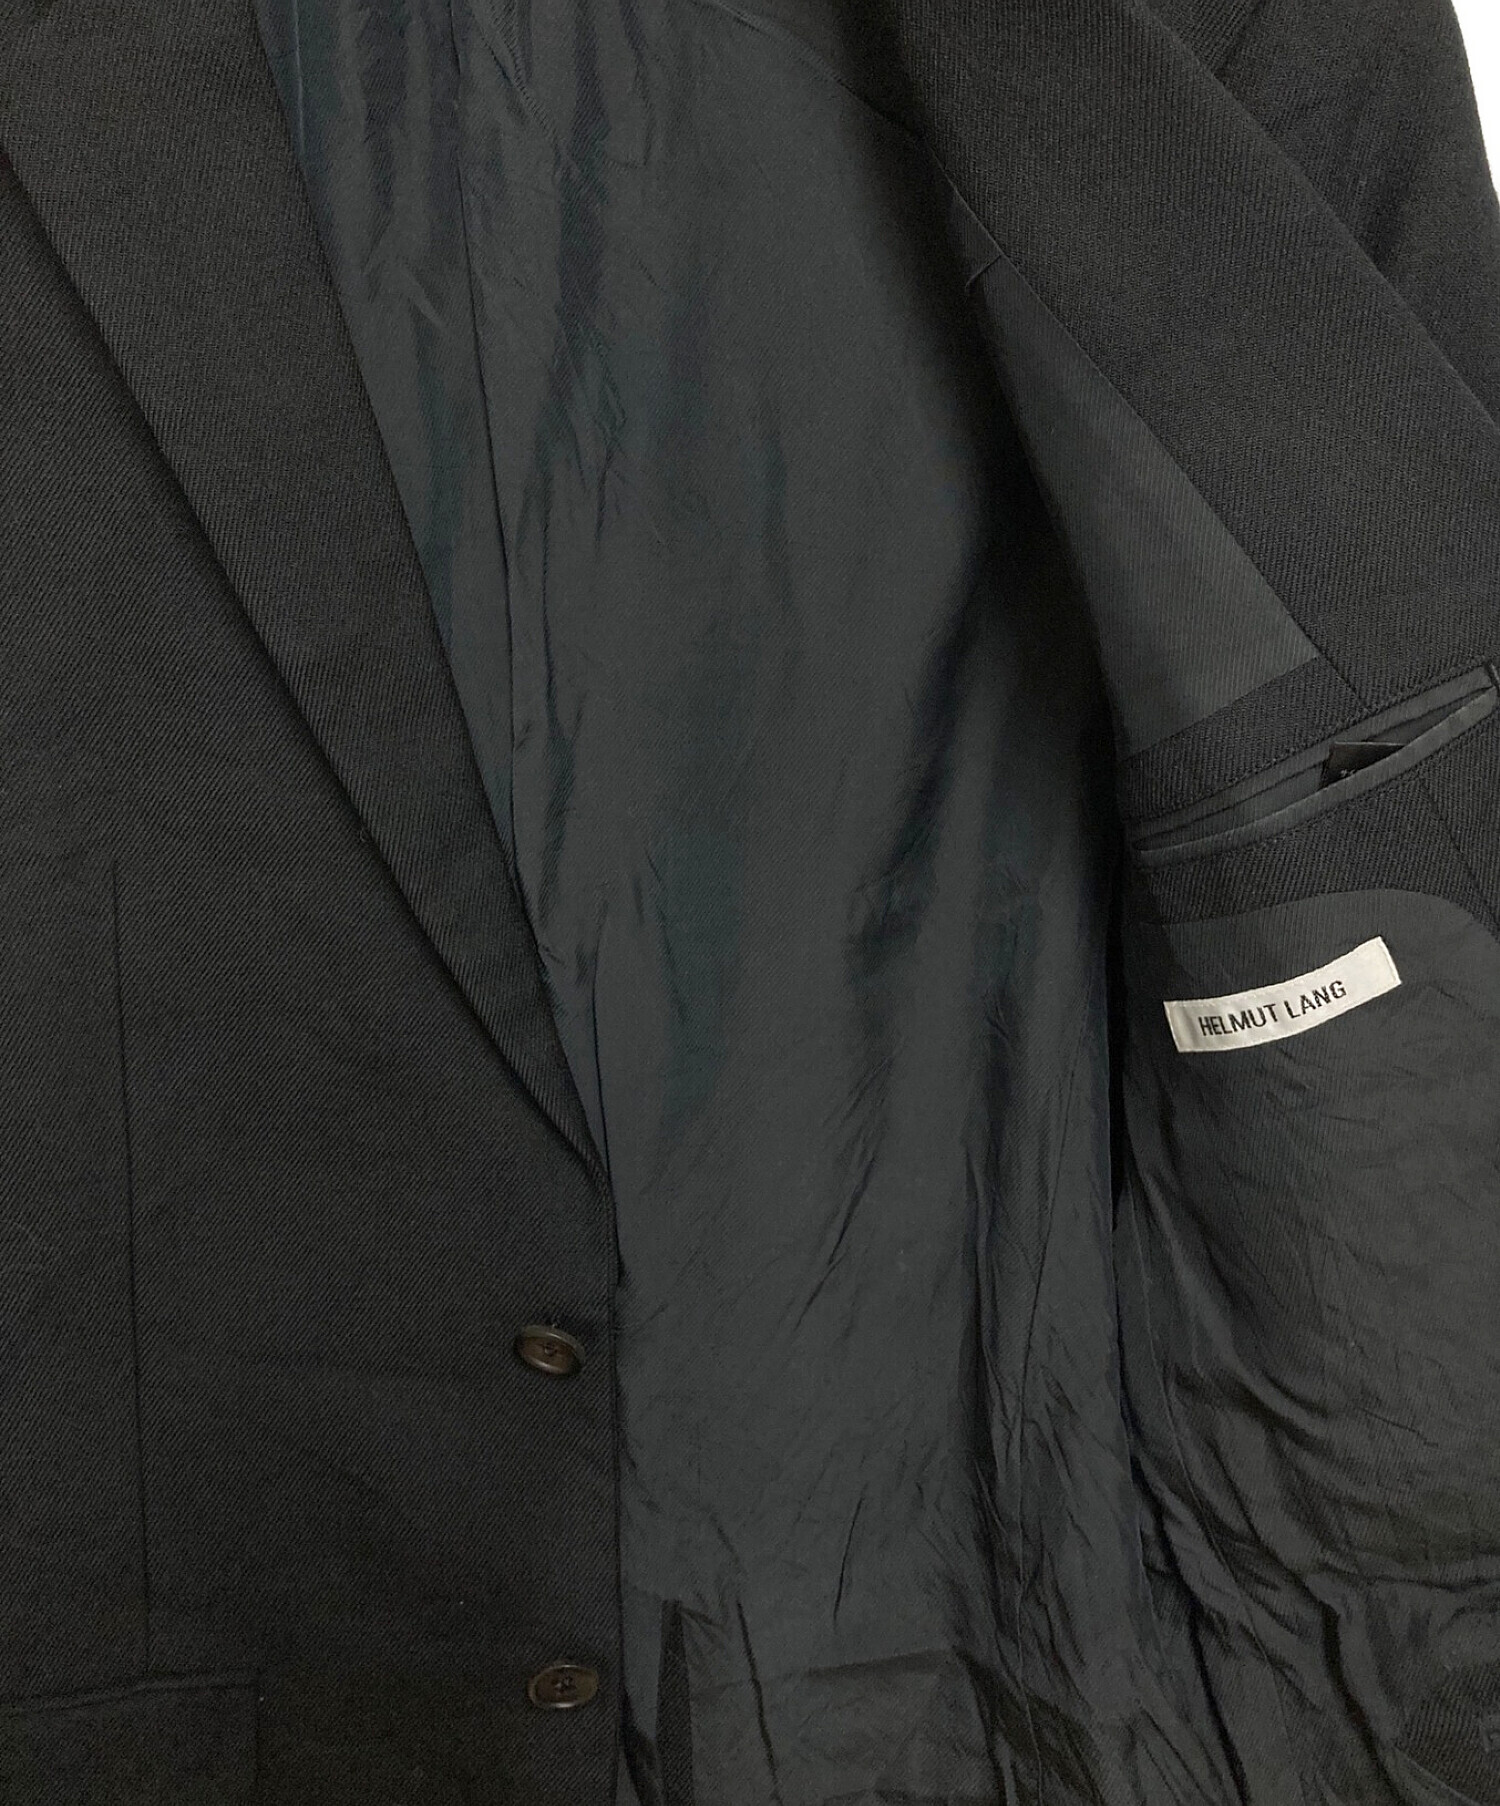 HELMUT LANG (ヘルムートラング) セットアップスーツ ブラック サイズ:Mサイズ